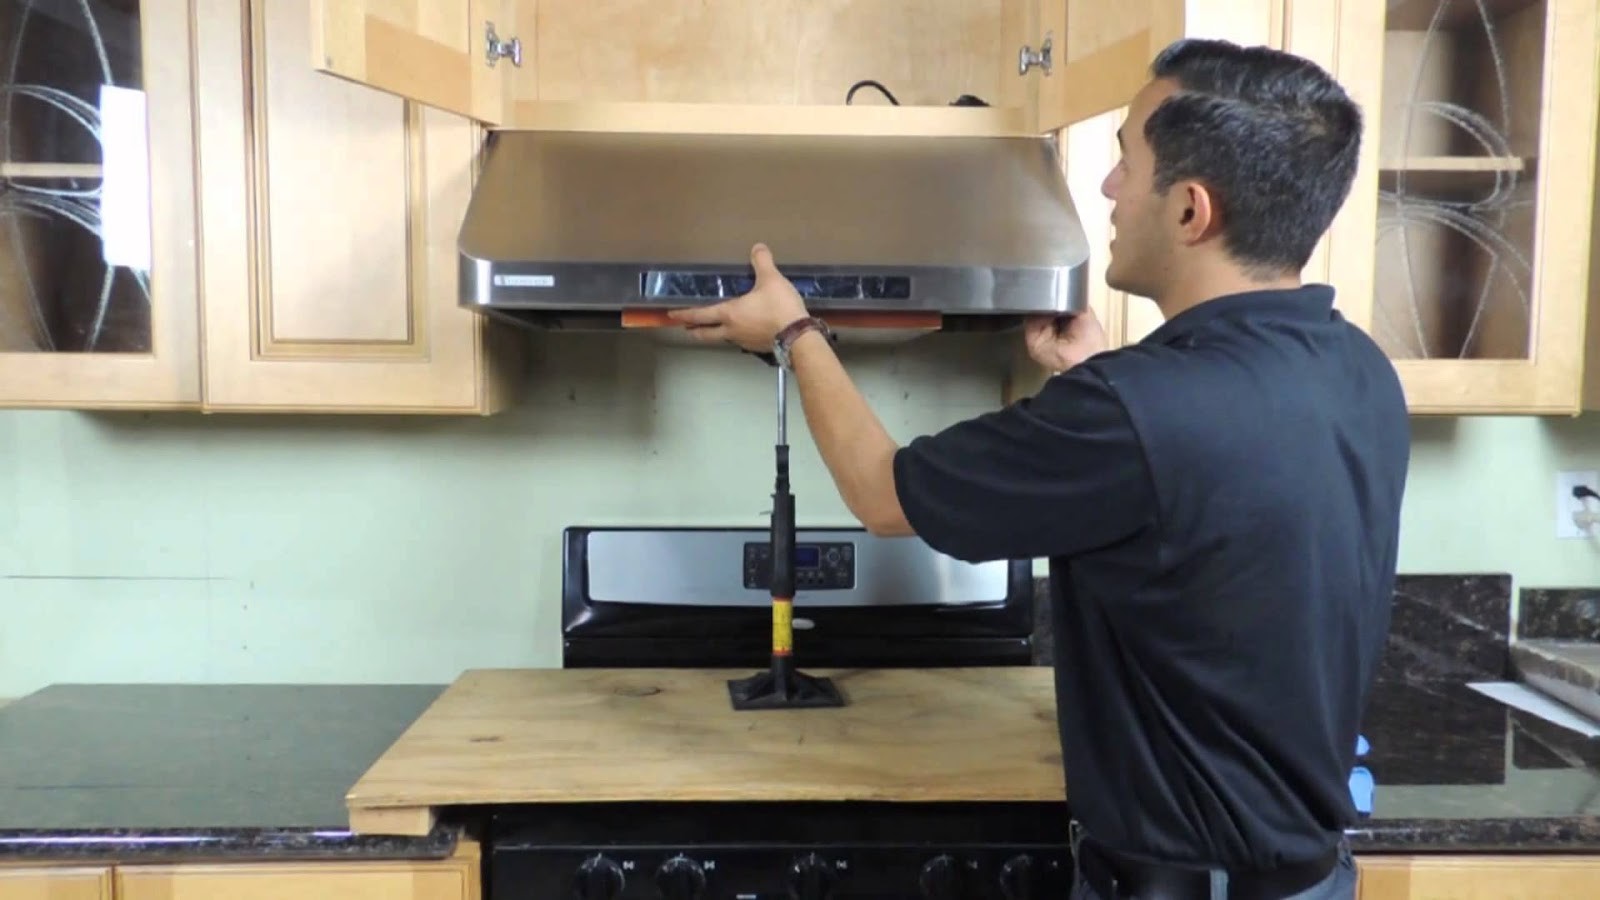 Chia sẻ cách lắp máy hút mùi bếp sao cho đúng và an toàn nhất.